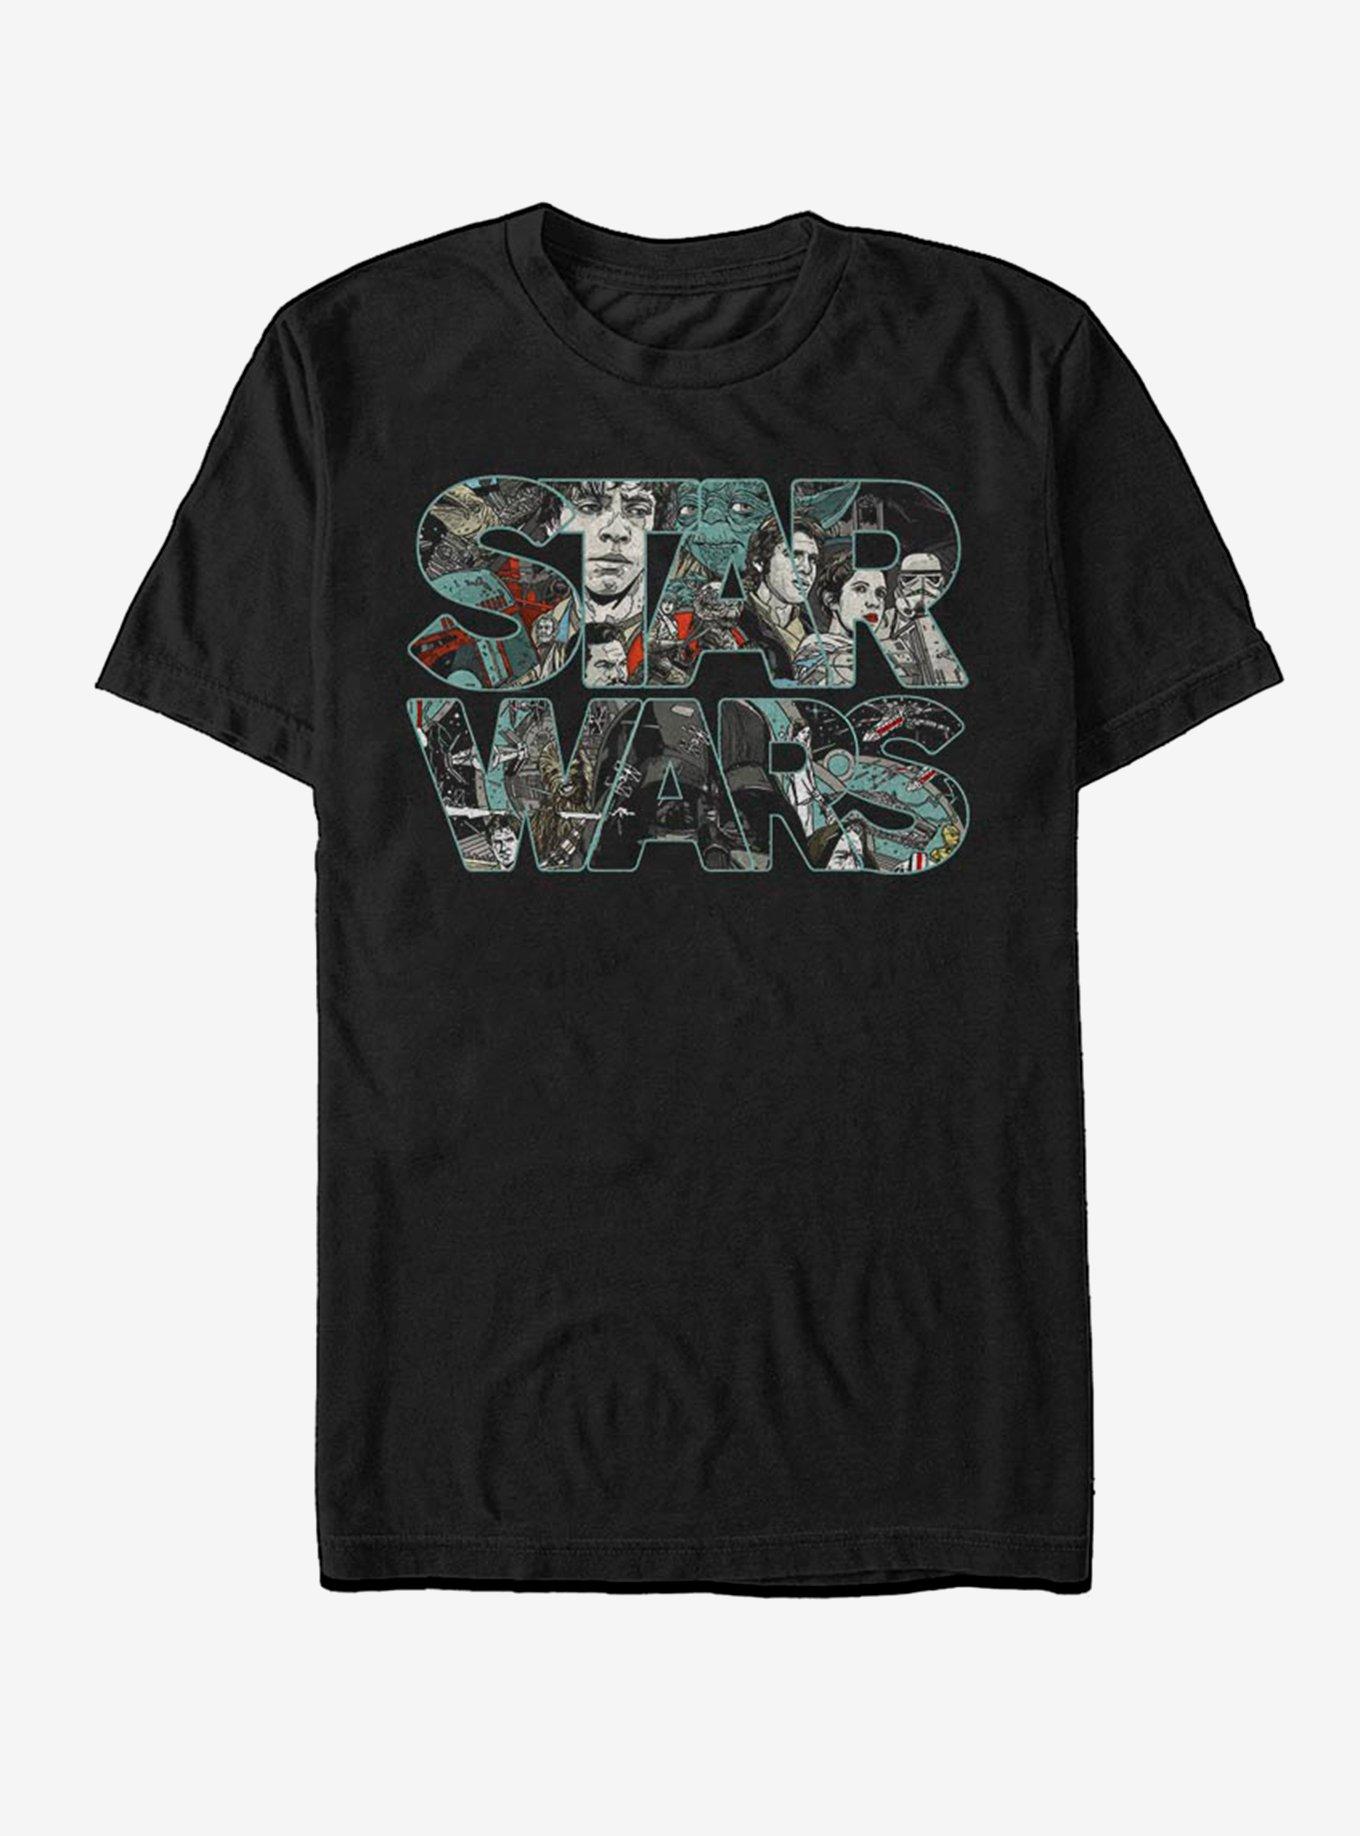 Star Wars Poster Text T-Shirt, BLACK, hi-res